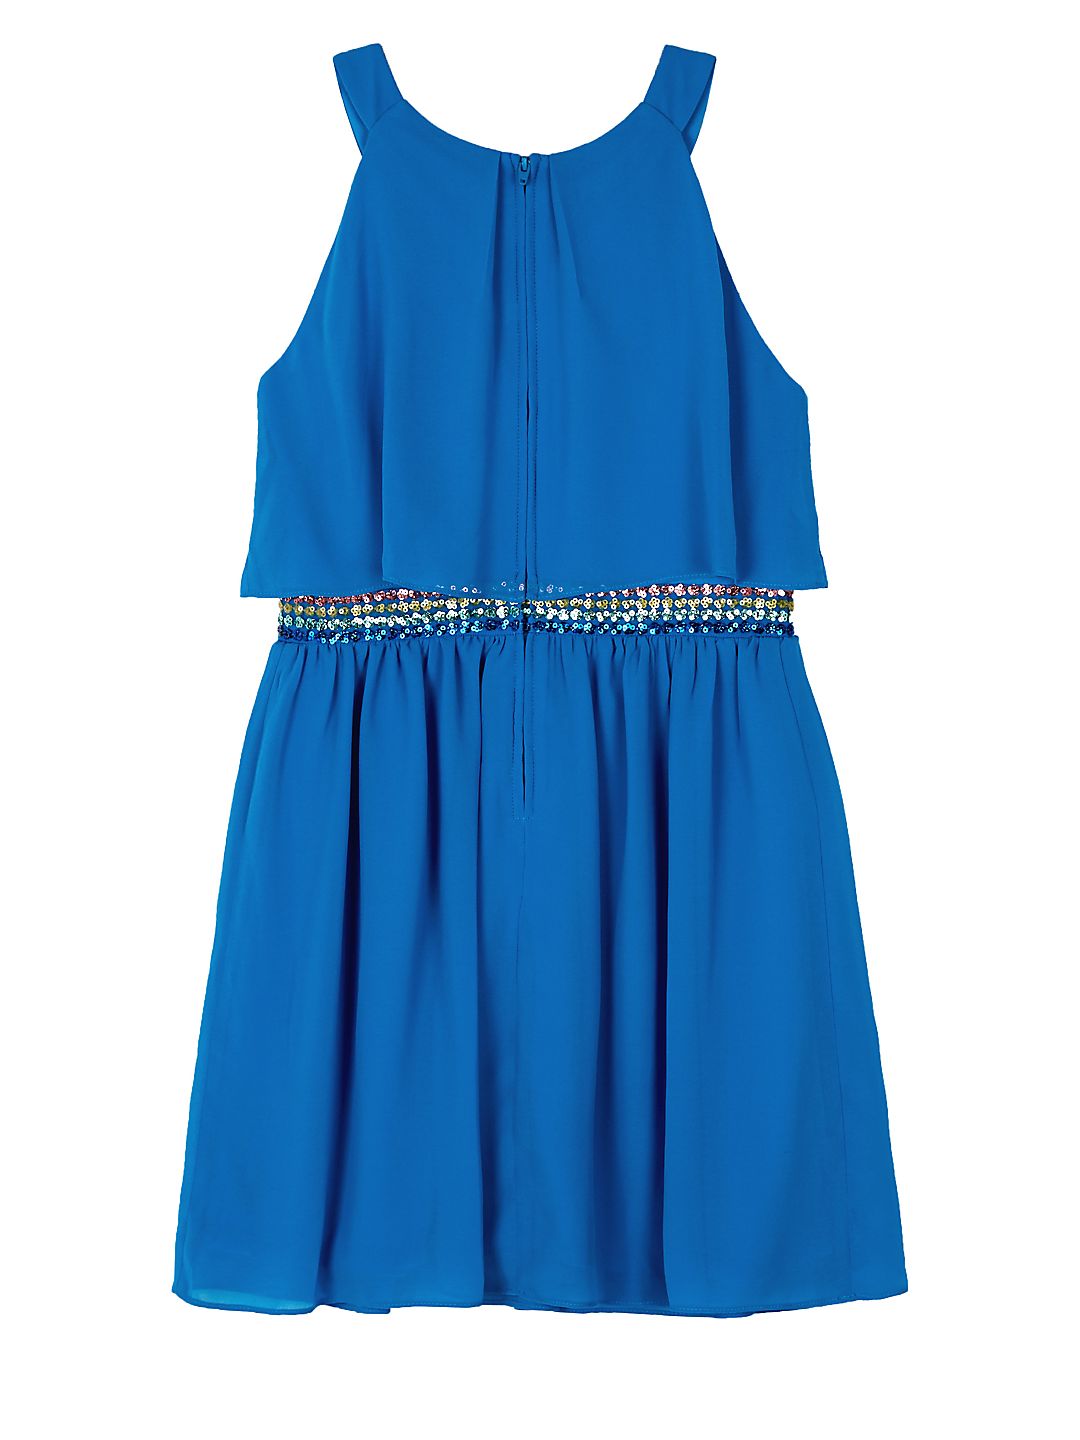 Halter Neck Sequin Waist Dress (Big Girls) - image 2 of 2